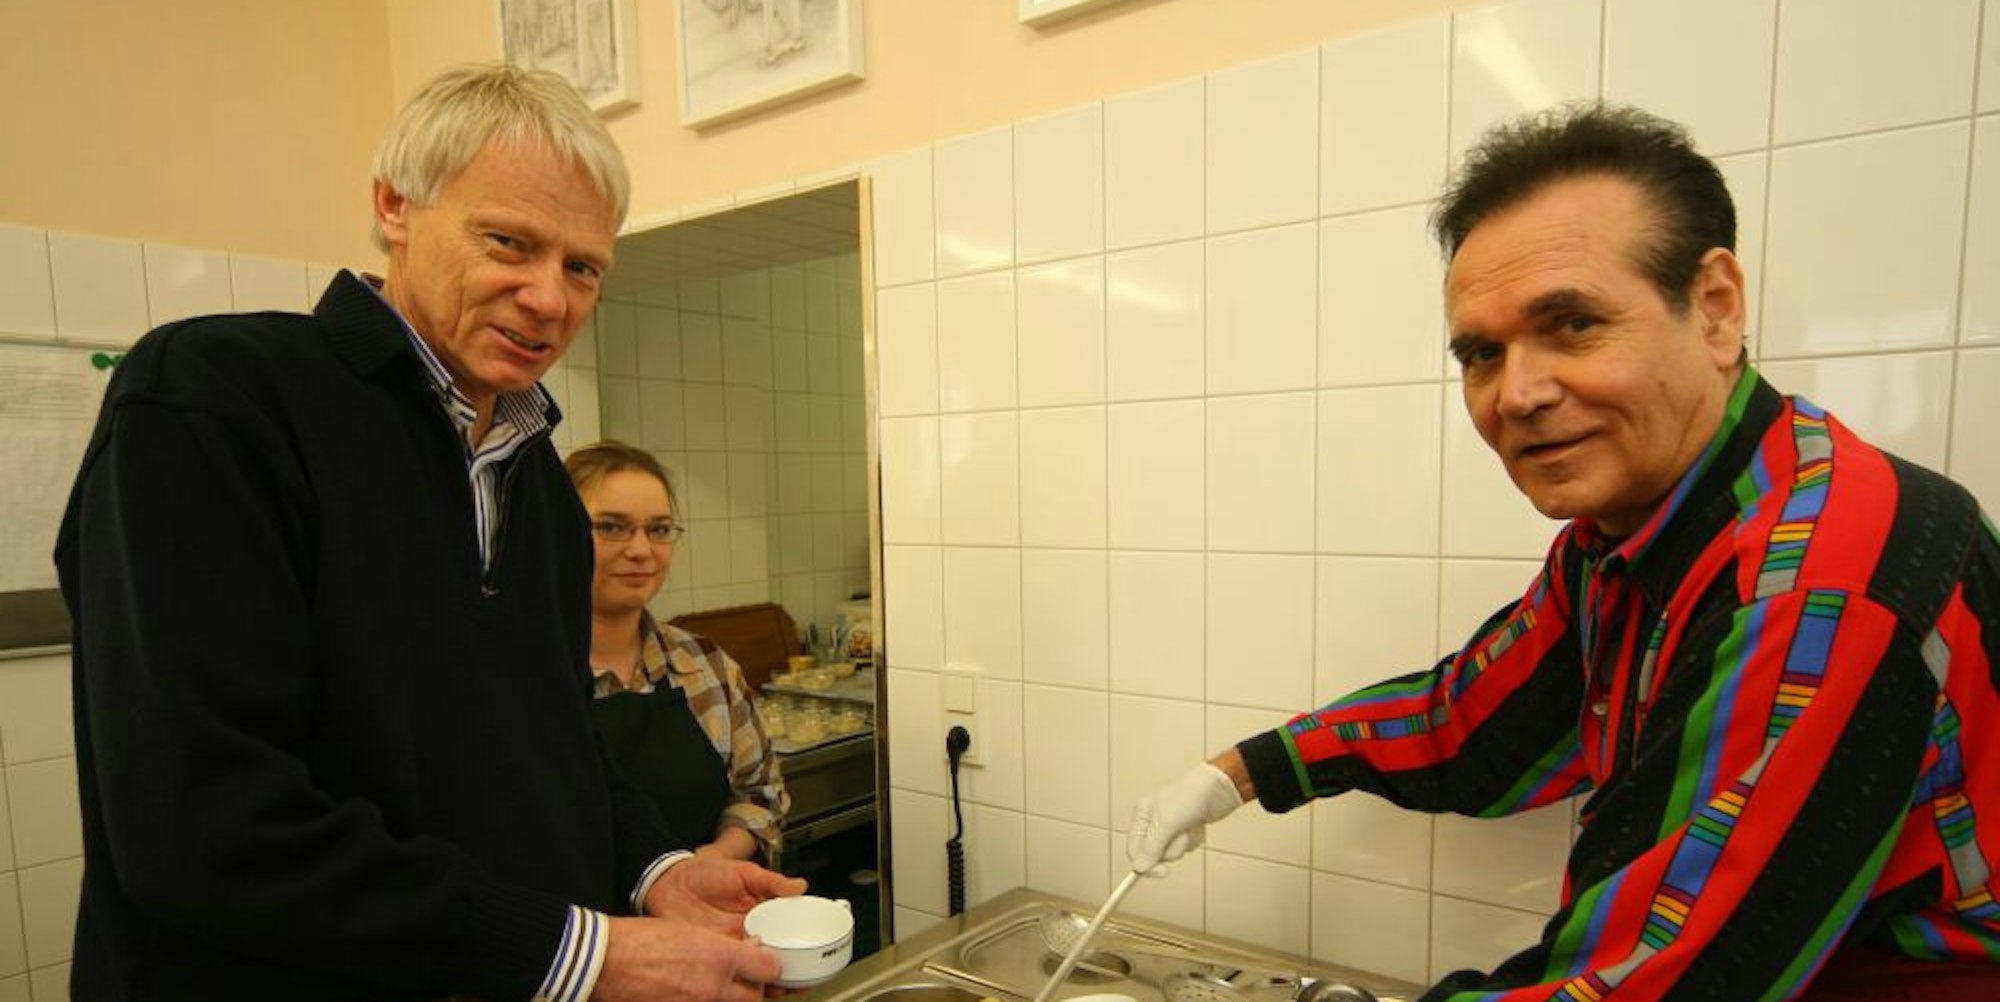 Ted Herold (r.), hier mit Tafelchef Ulrich Pfeifer, stand im Jahr 2012 in der Gummersbacher Suppenküche am Herd.